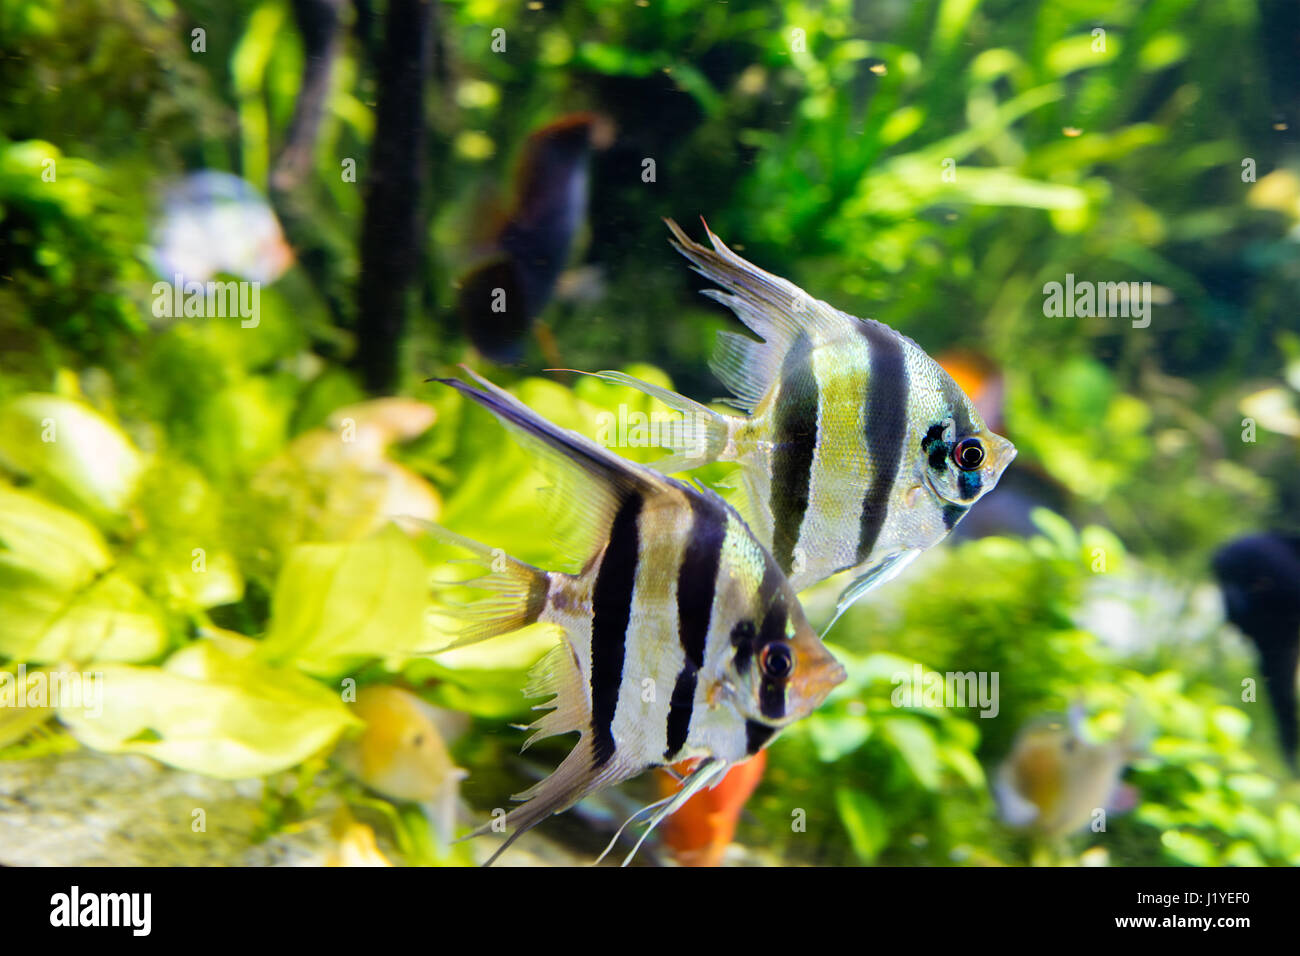 Angelfish Pterophyllum scalare in aquarium Stock Photo